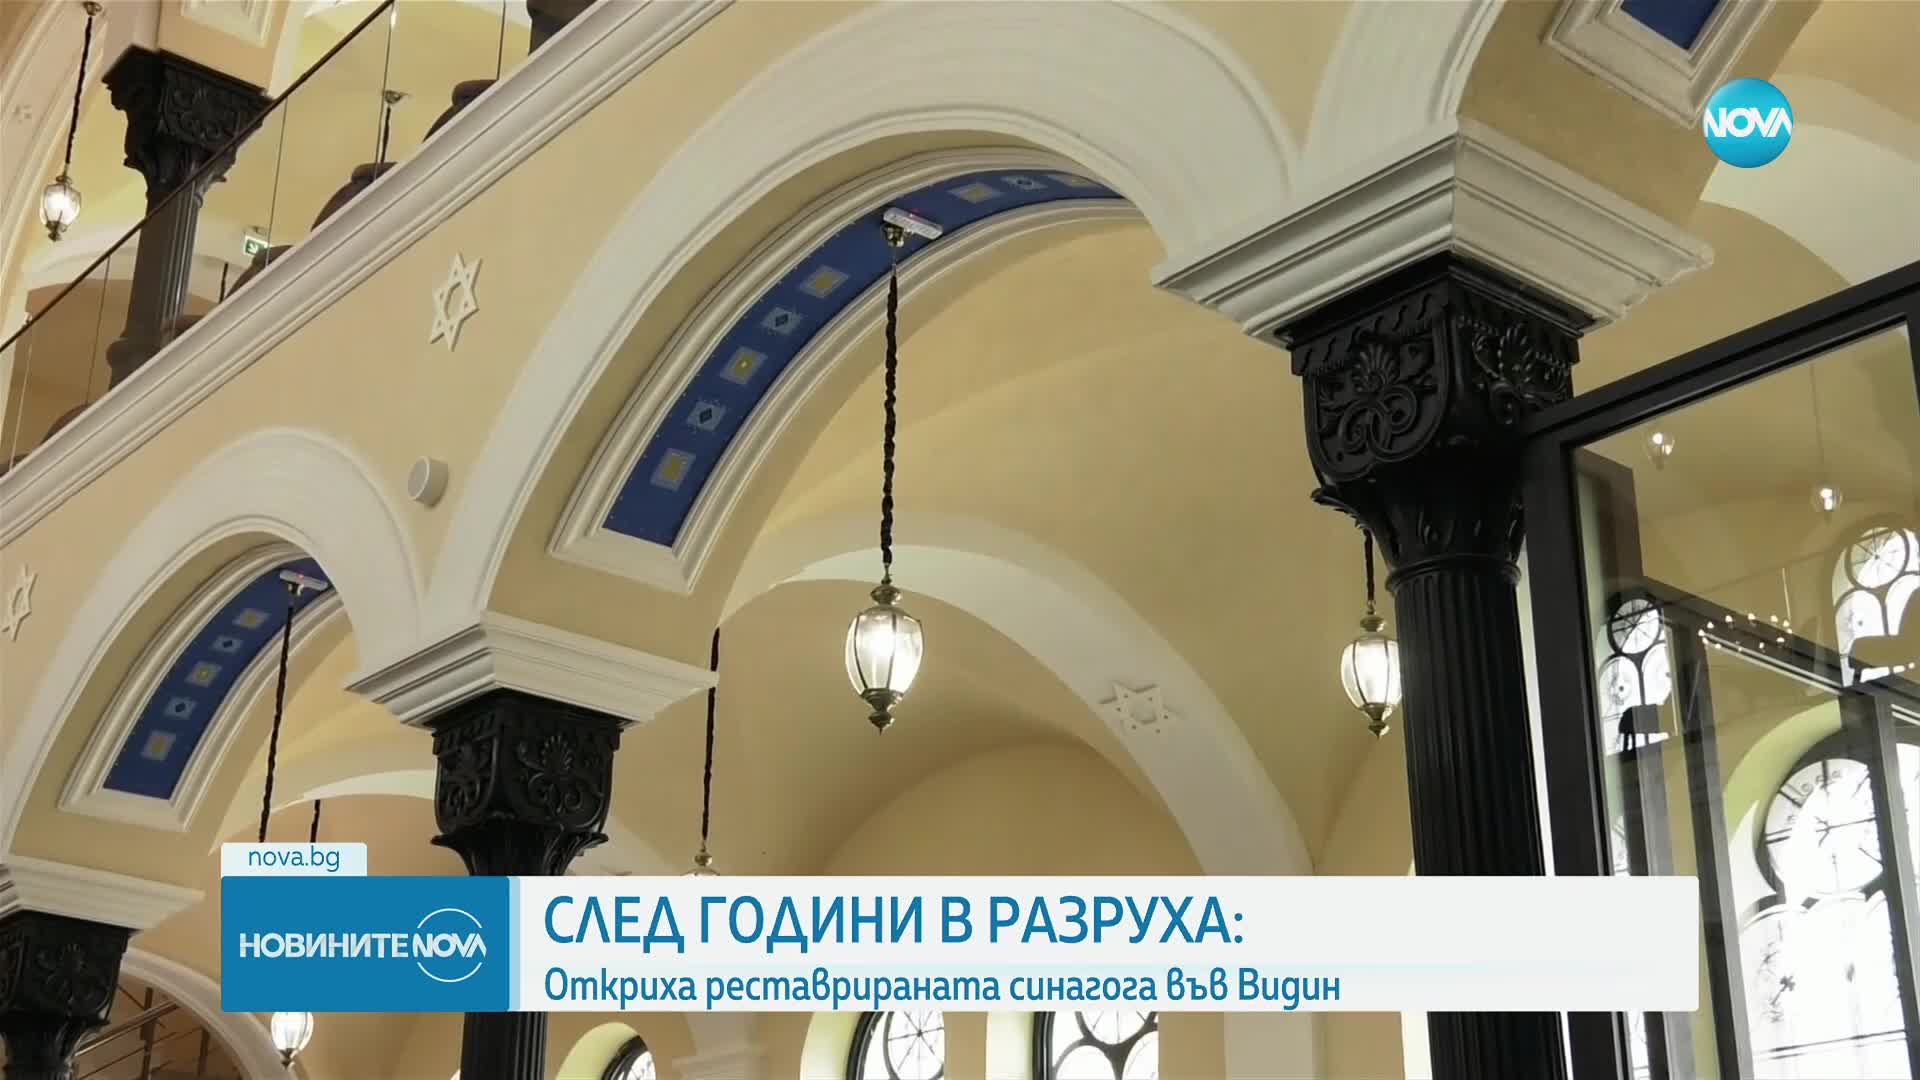 СЛЕД ГОДИНИ В РАЗРУХА: Откриха реставрираната синагога във Видин